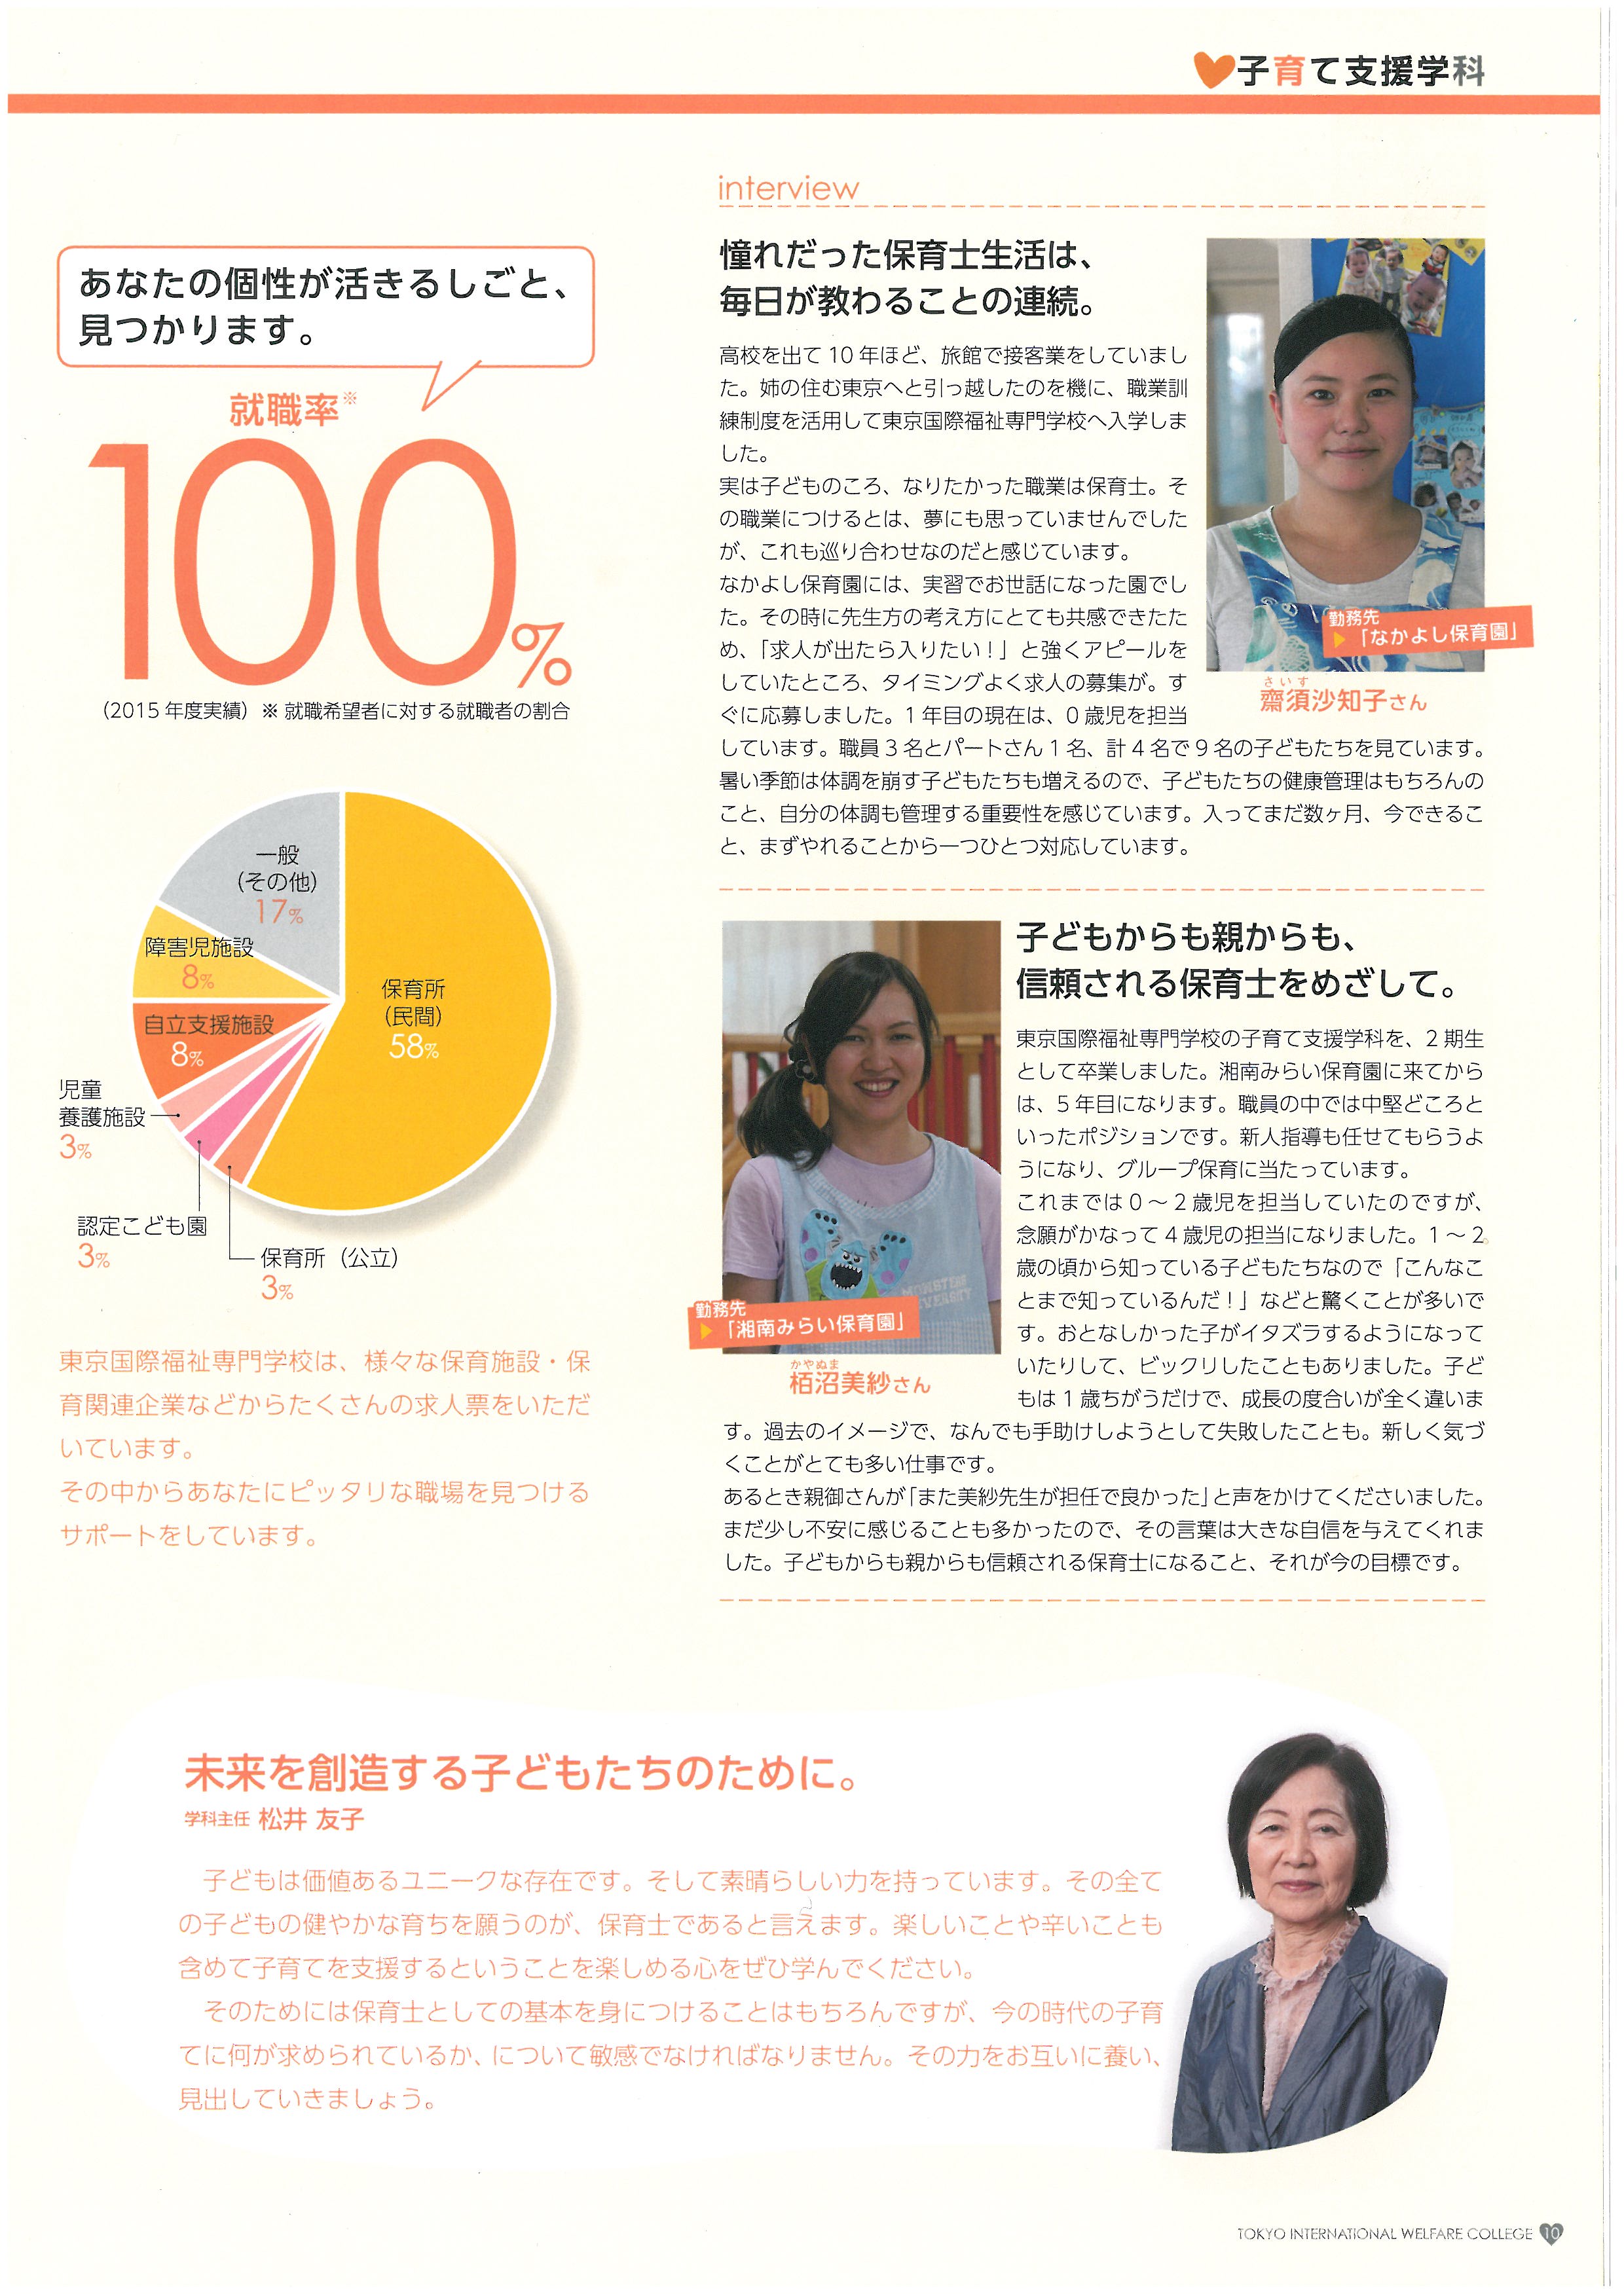 도쿄 국제복지전문학교 홍보 팜플렛 11.jpg